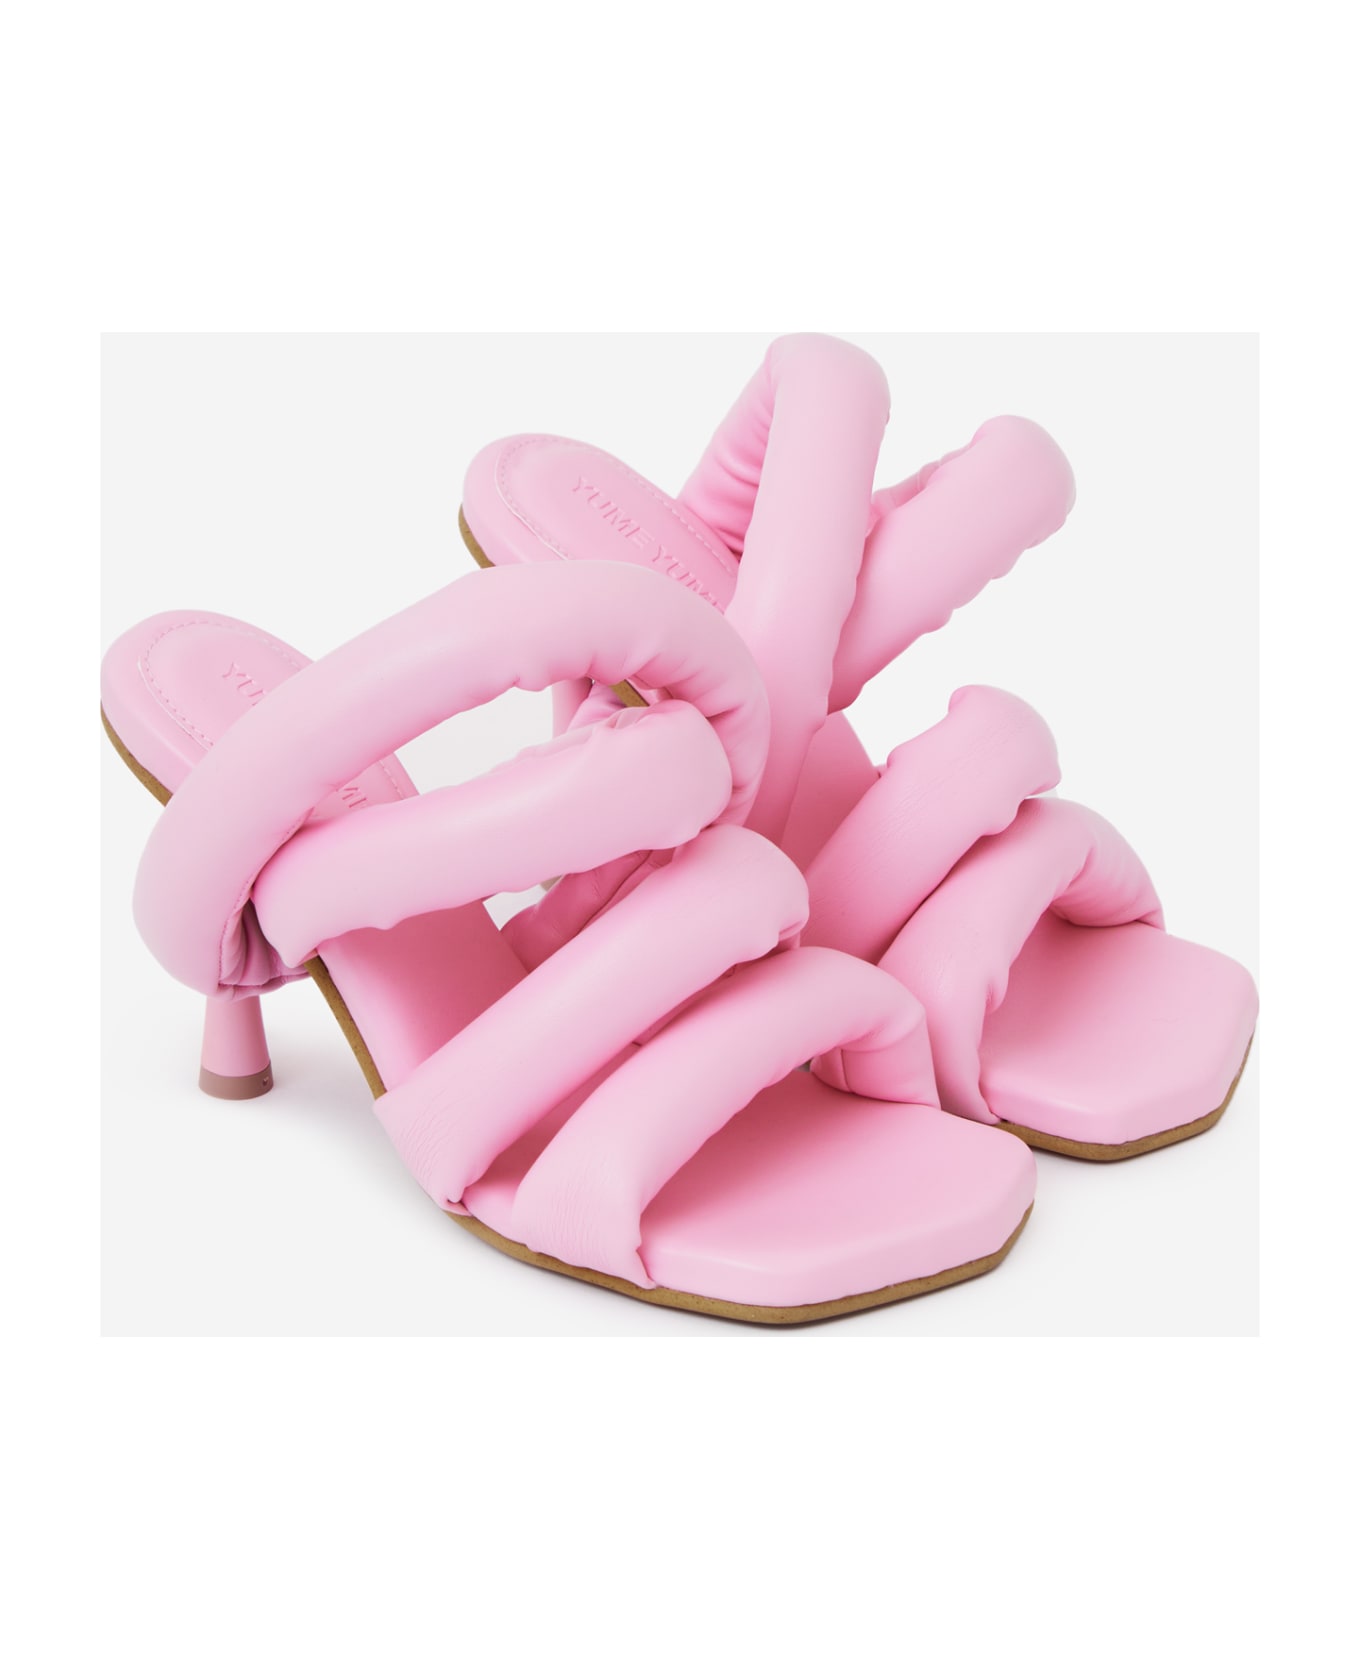 YUME YUME Circular Heel Sandals - rose-pink